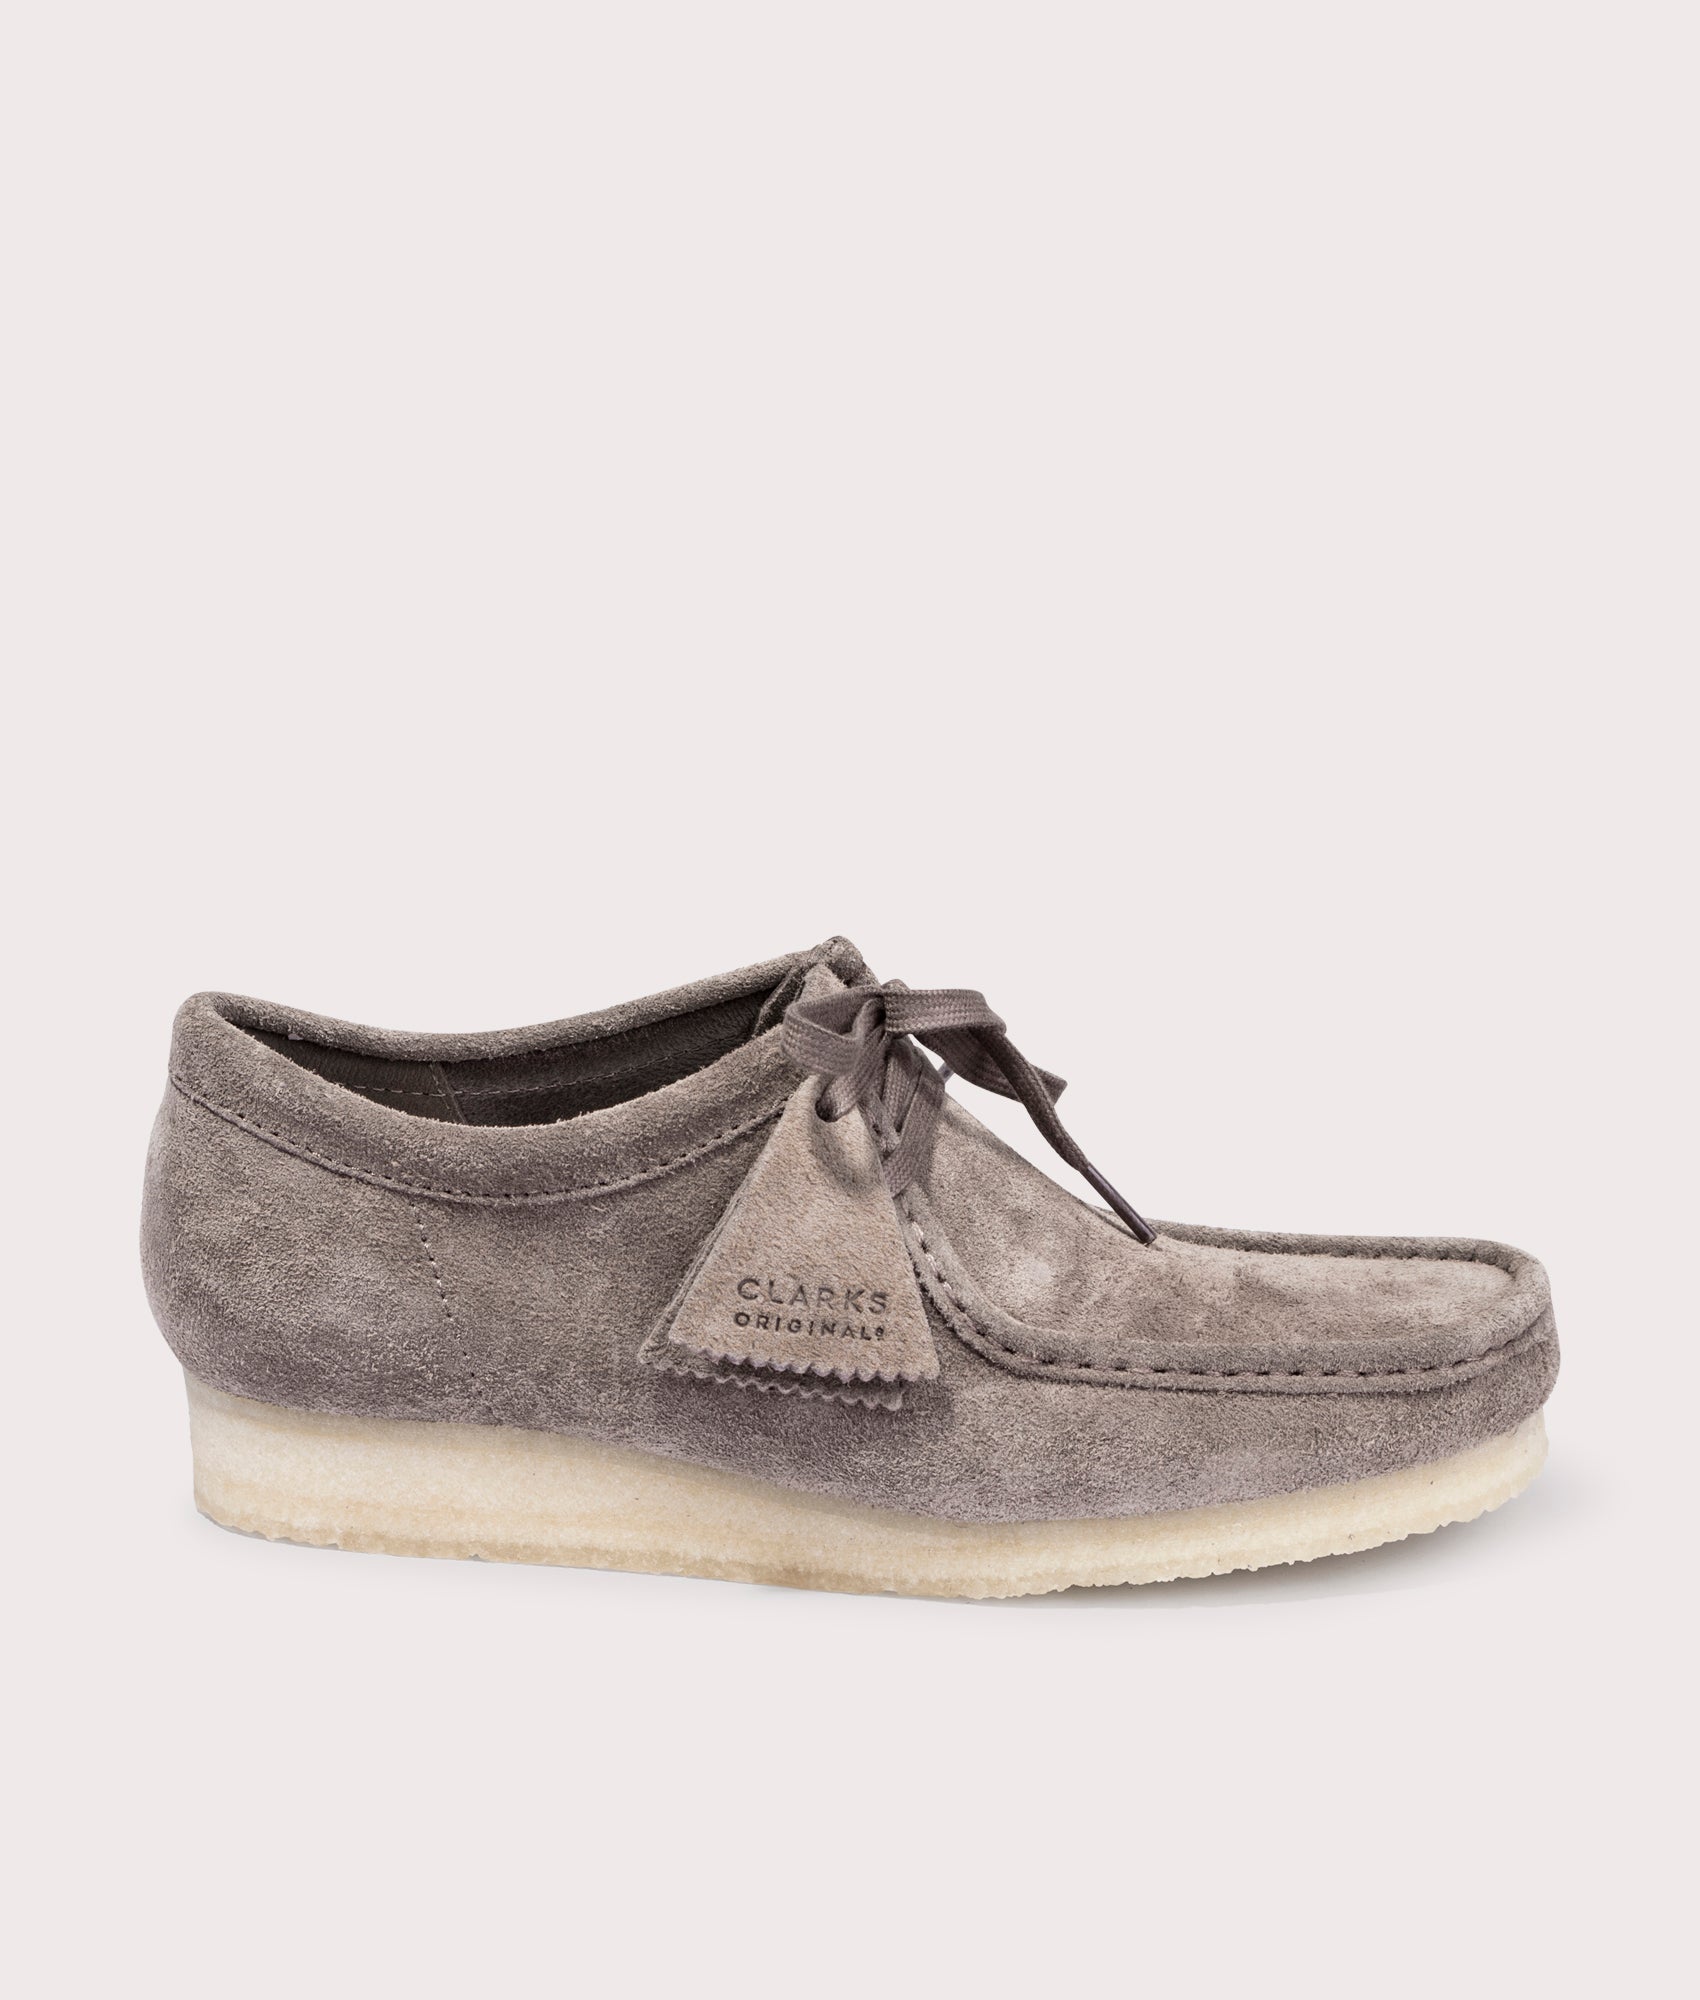 Clarks Originals Mens Wallabee Shoes - Colour: Dark Grey Suede - Size: 9